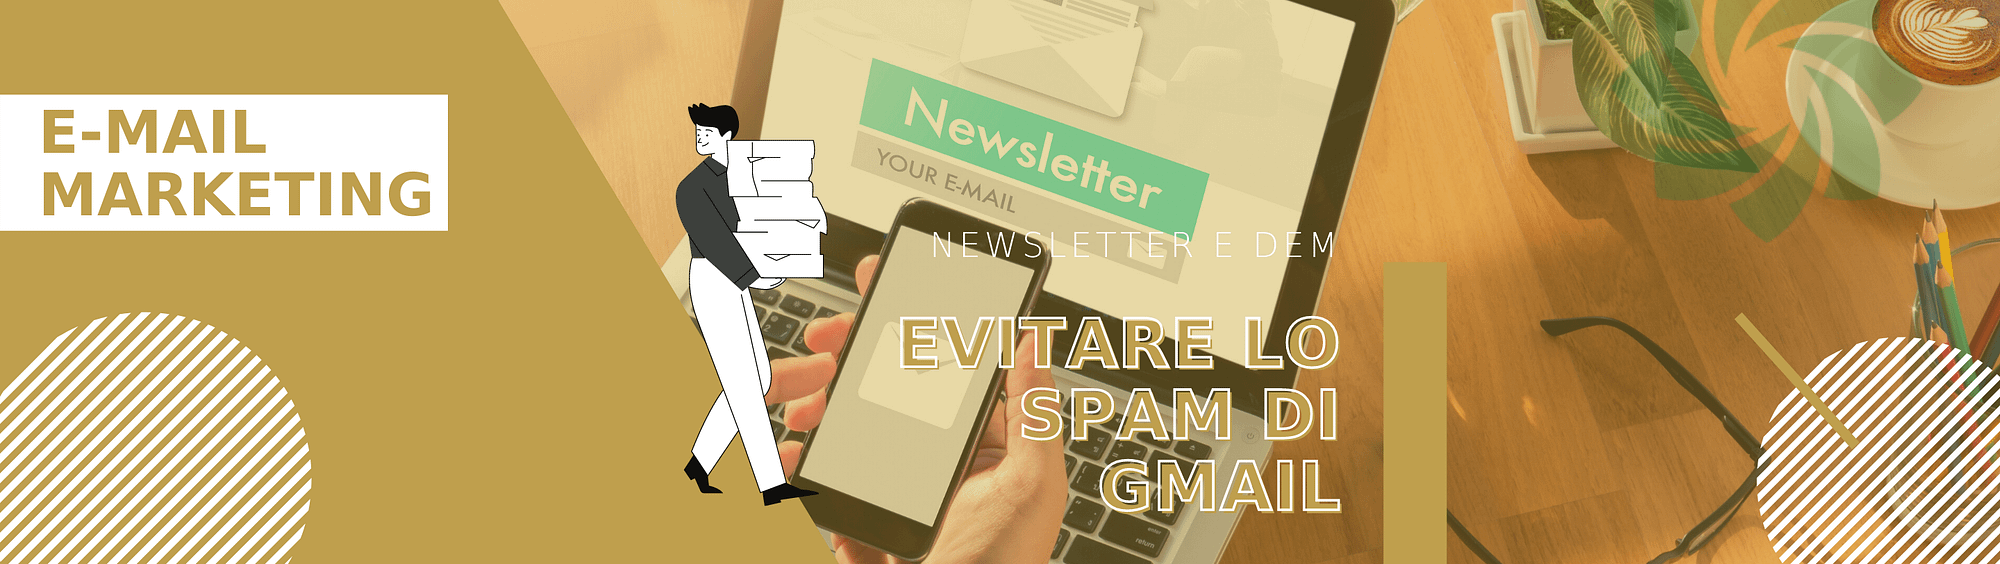 spam-gmail-evitare